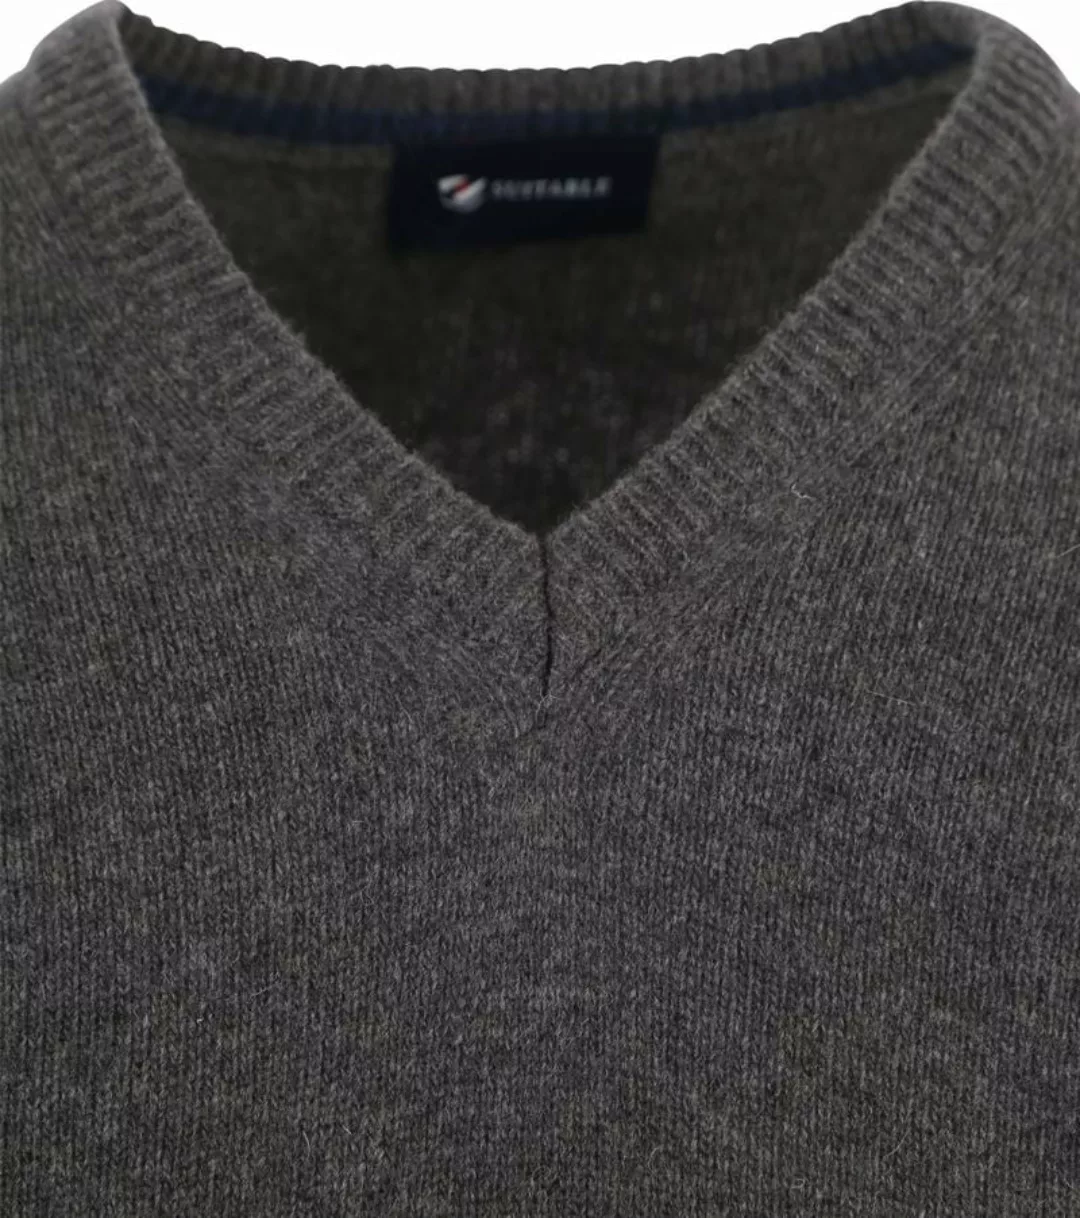 Suitable Lammwolle Pullover V-Ausschnitt Anthrazit - Größe L günstig online kaufen